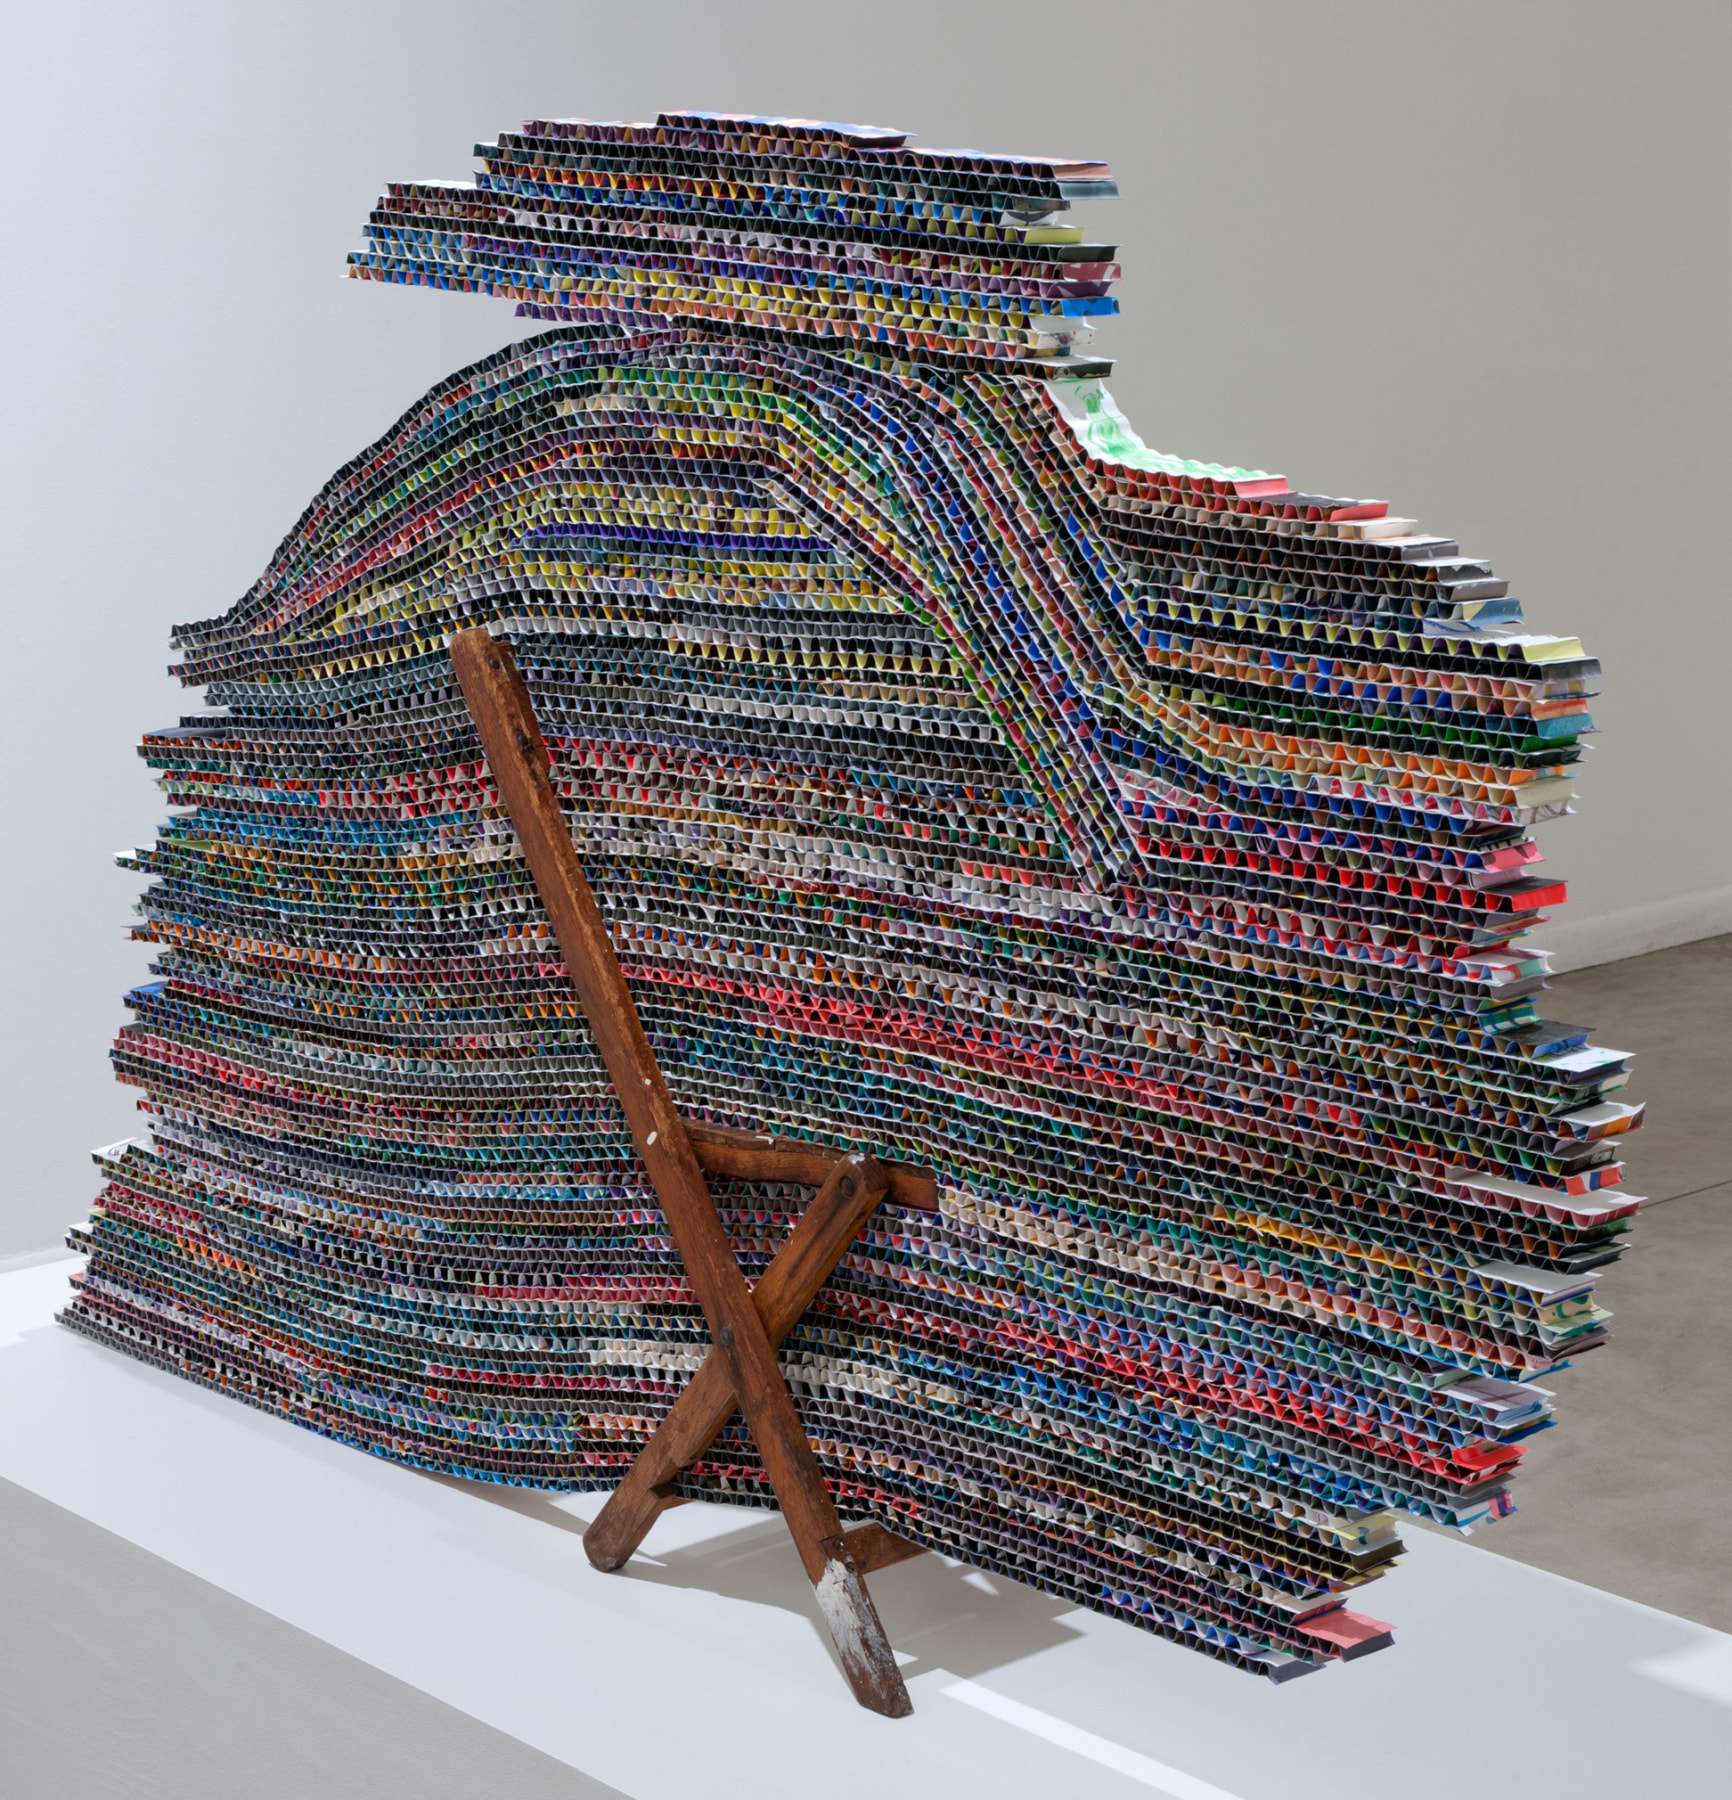 Mark Fox Untitled (Chair), 2011